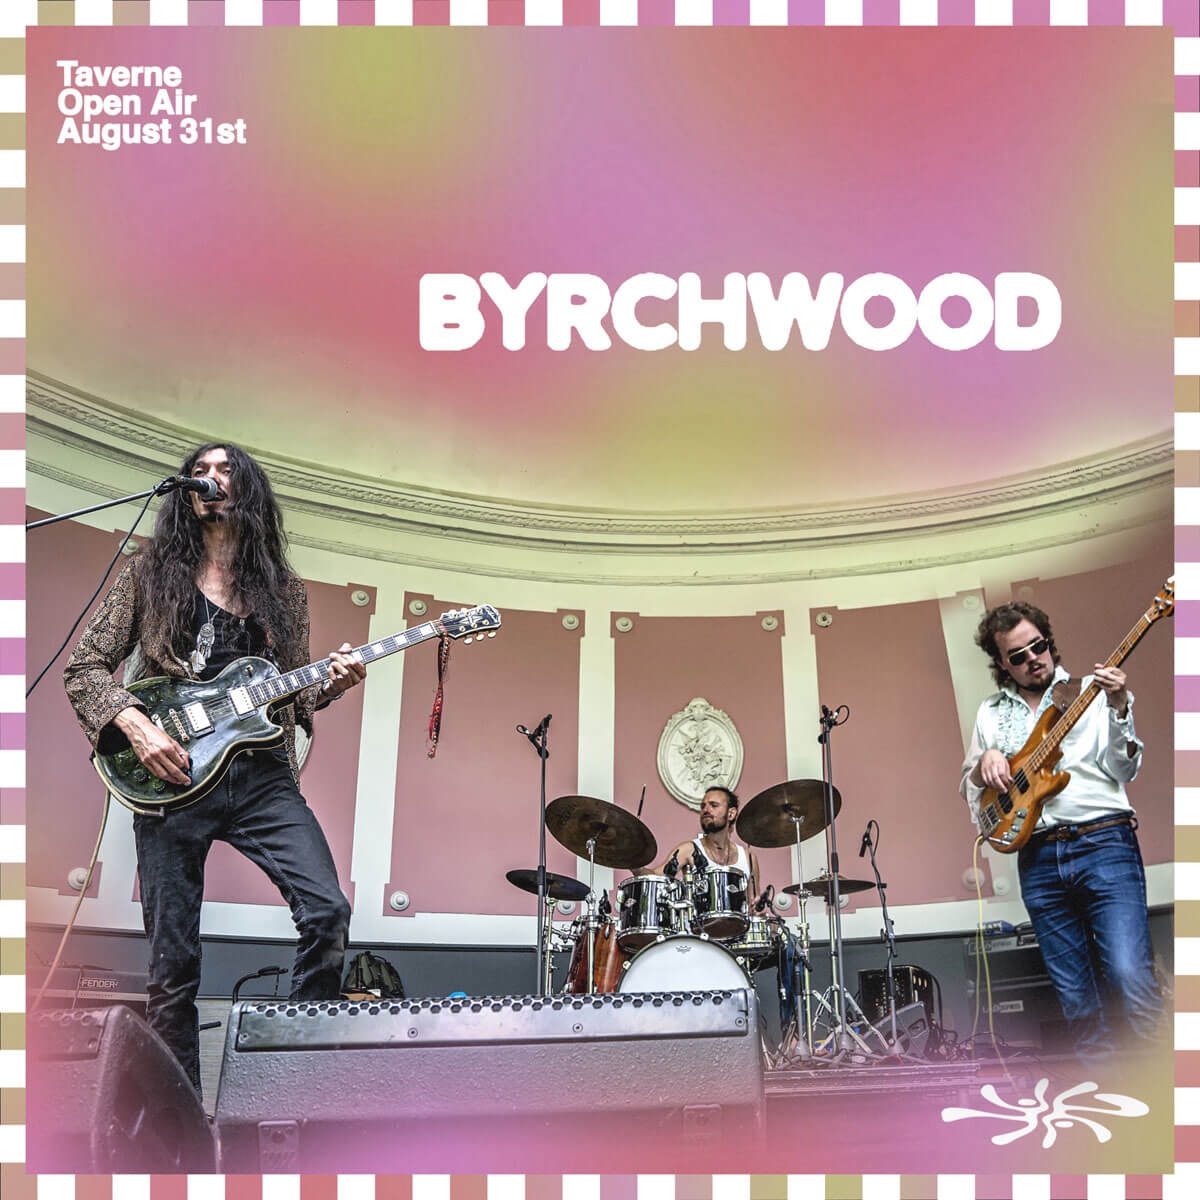 Byrchwood